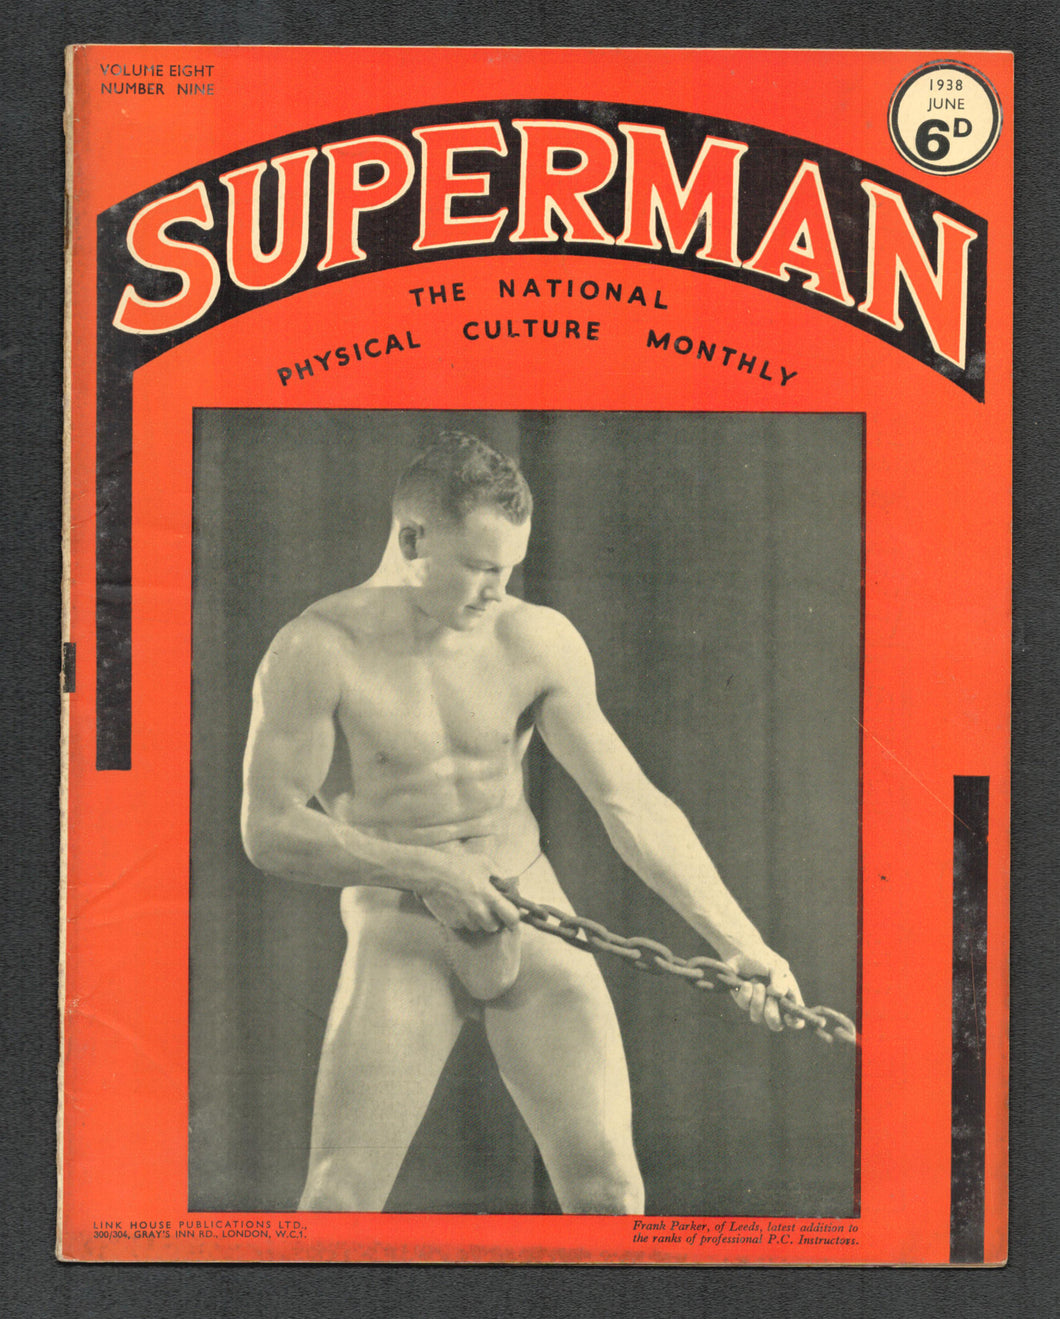 Superman Vol 8 No 9 June 1938